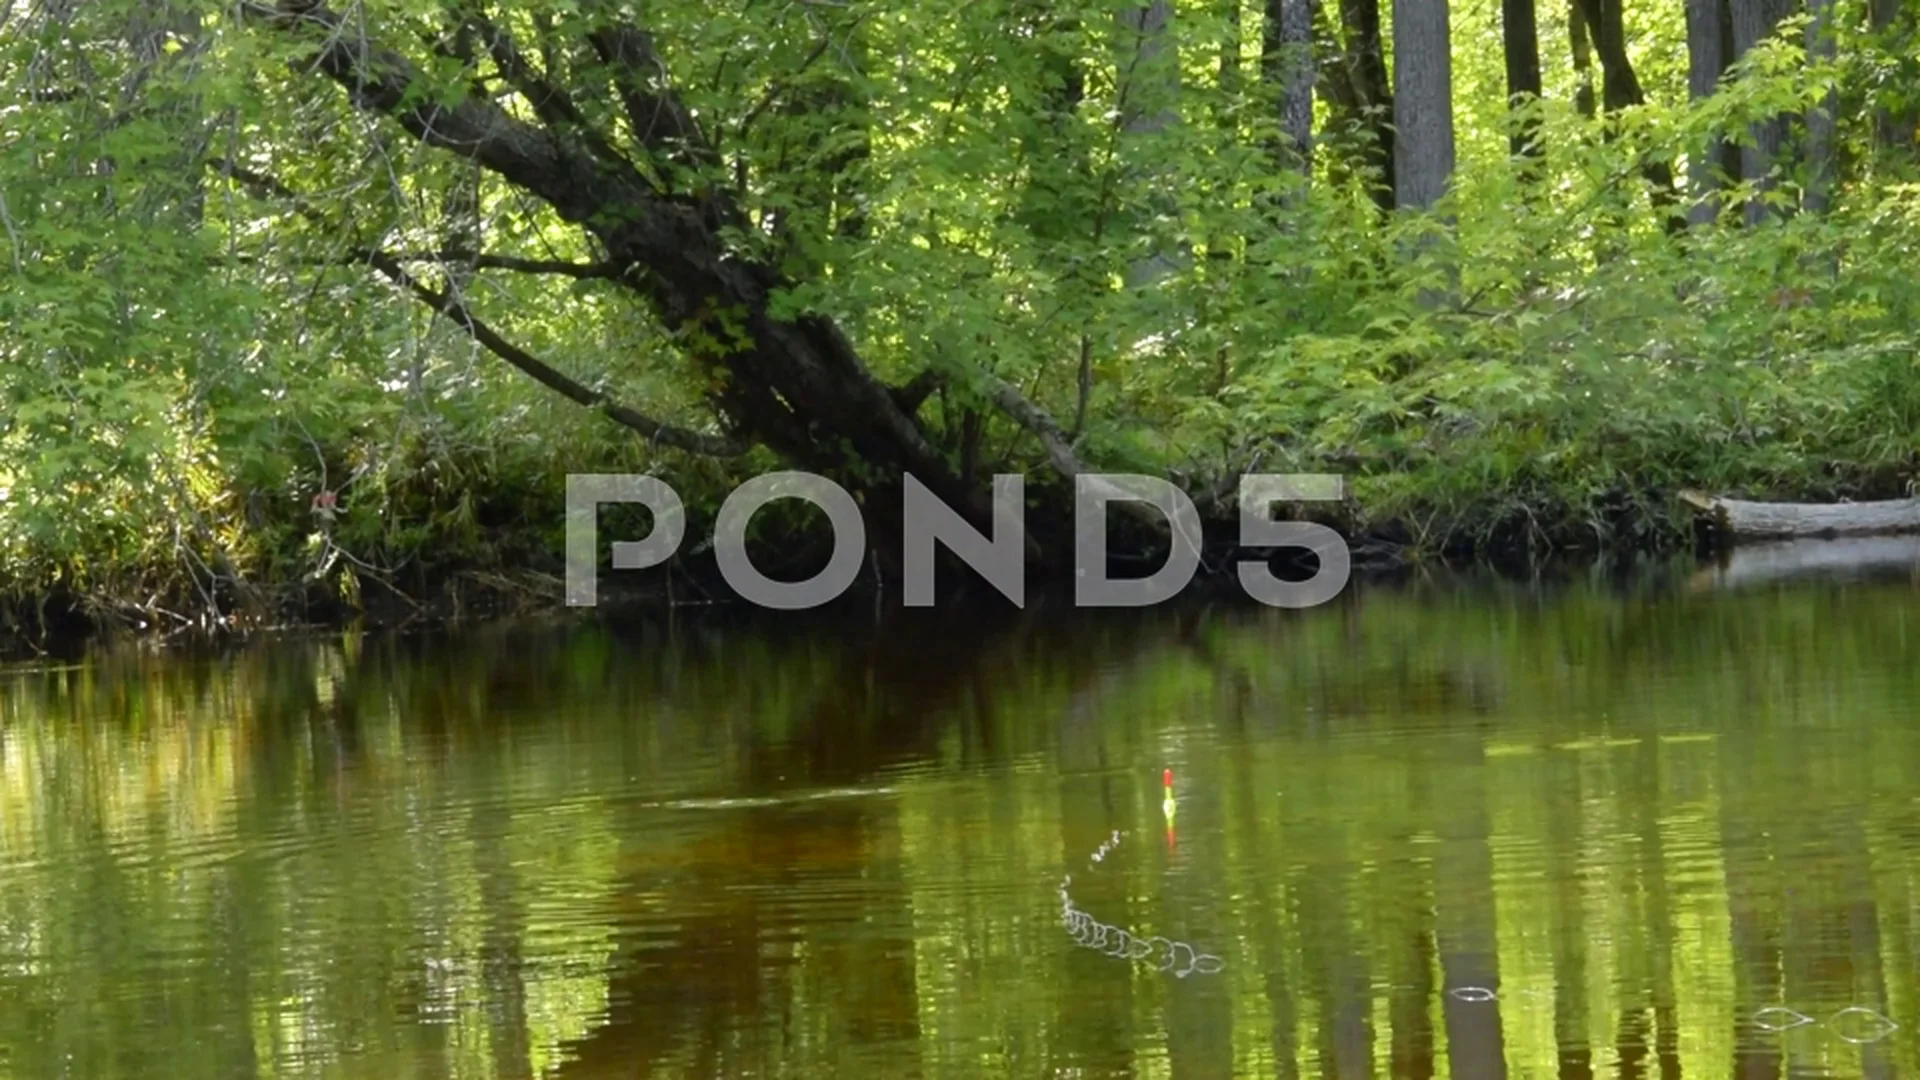 https://images.pond5.com/fishing-bobber-river-water-woods-footage-079407167_prevstill.jpeg